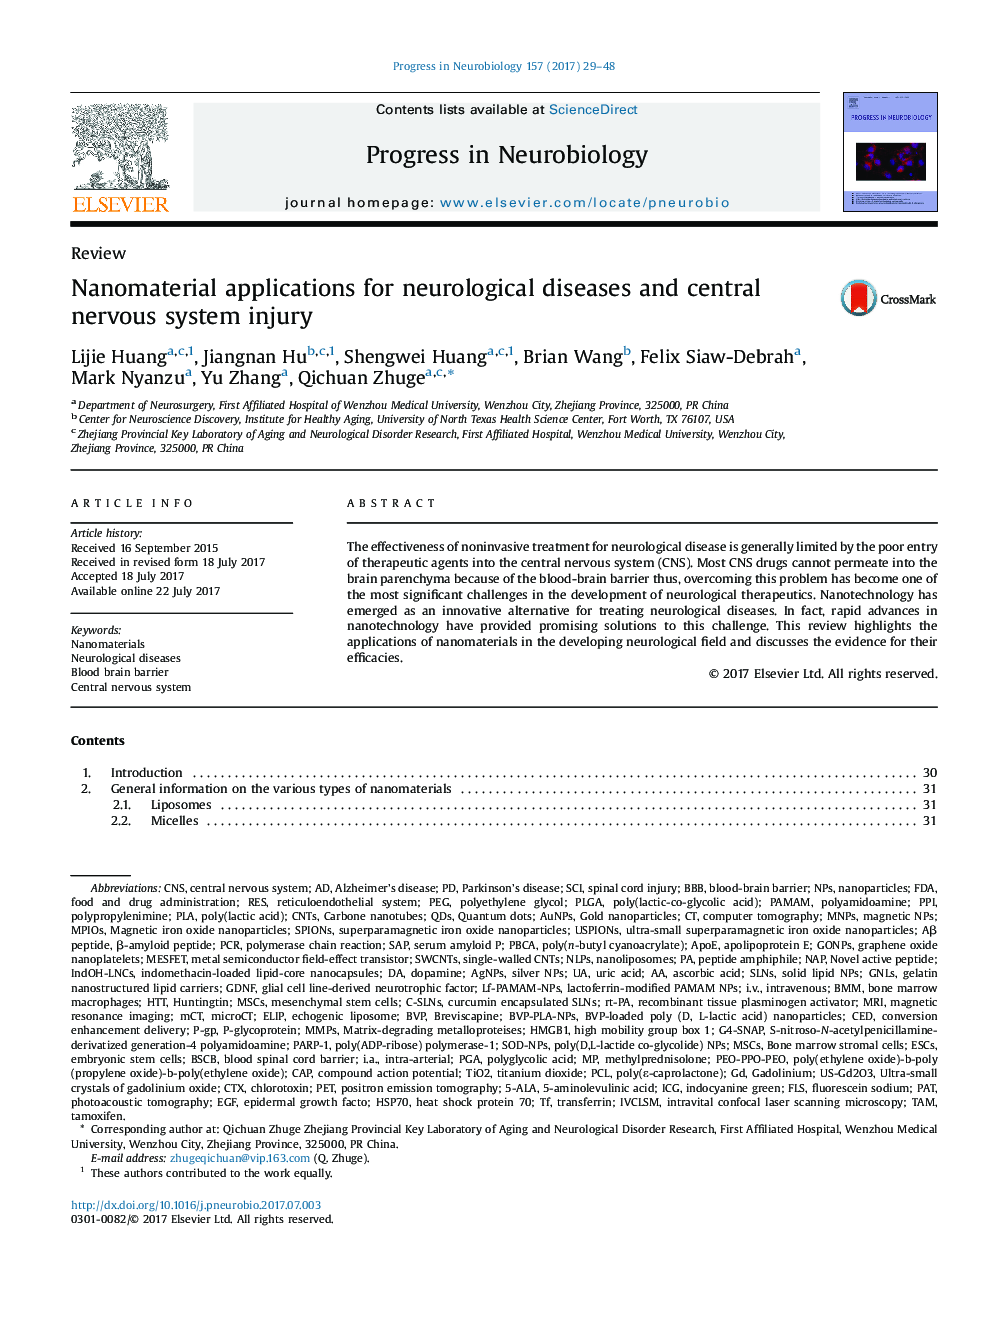 مقالات علمی کاربردی برای بیماری های عصبی و آسیب سیستم عصبی مرکزی 